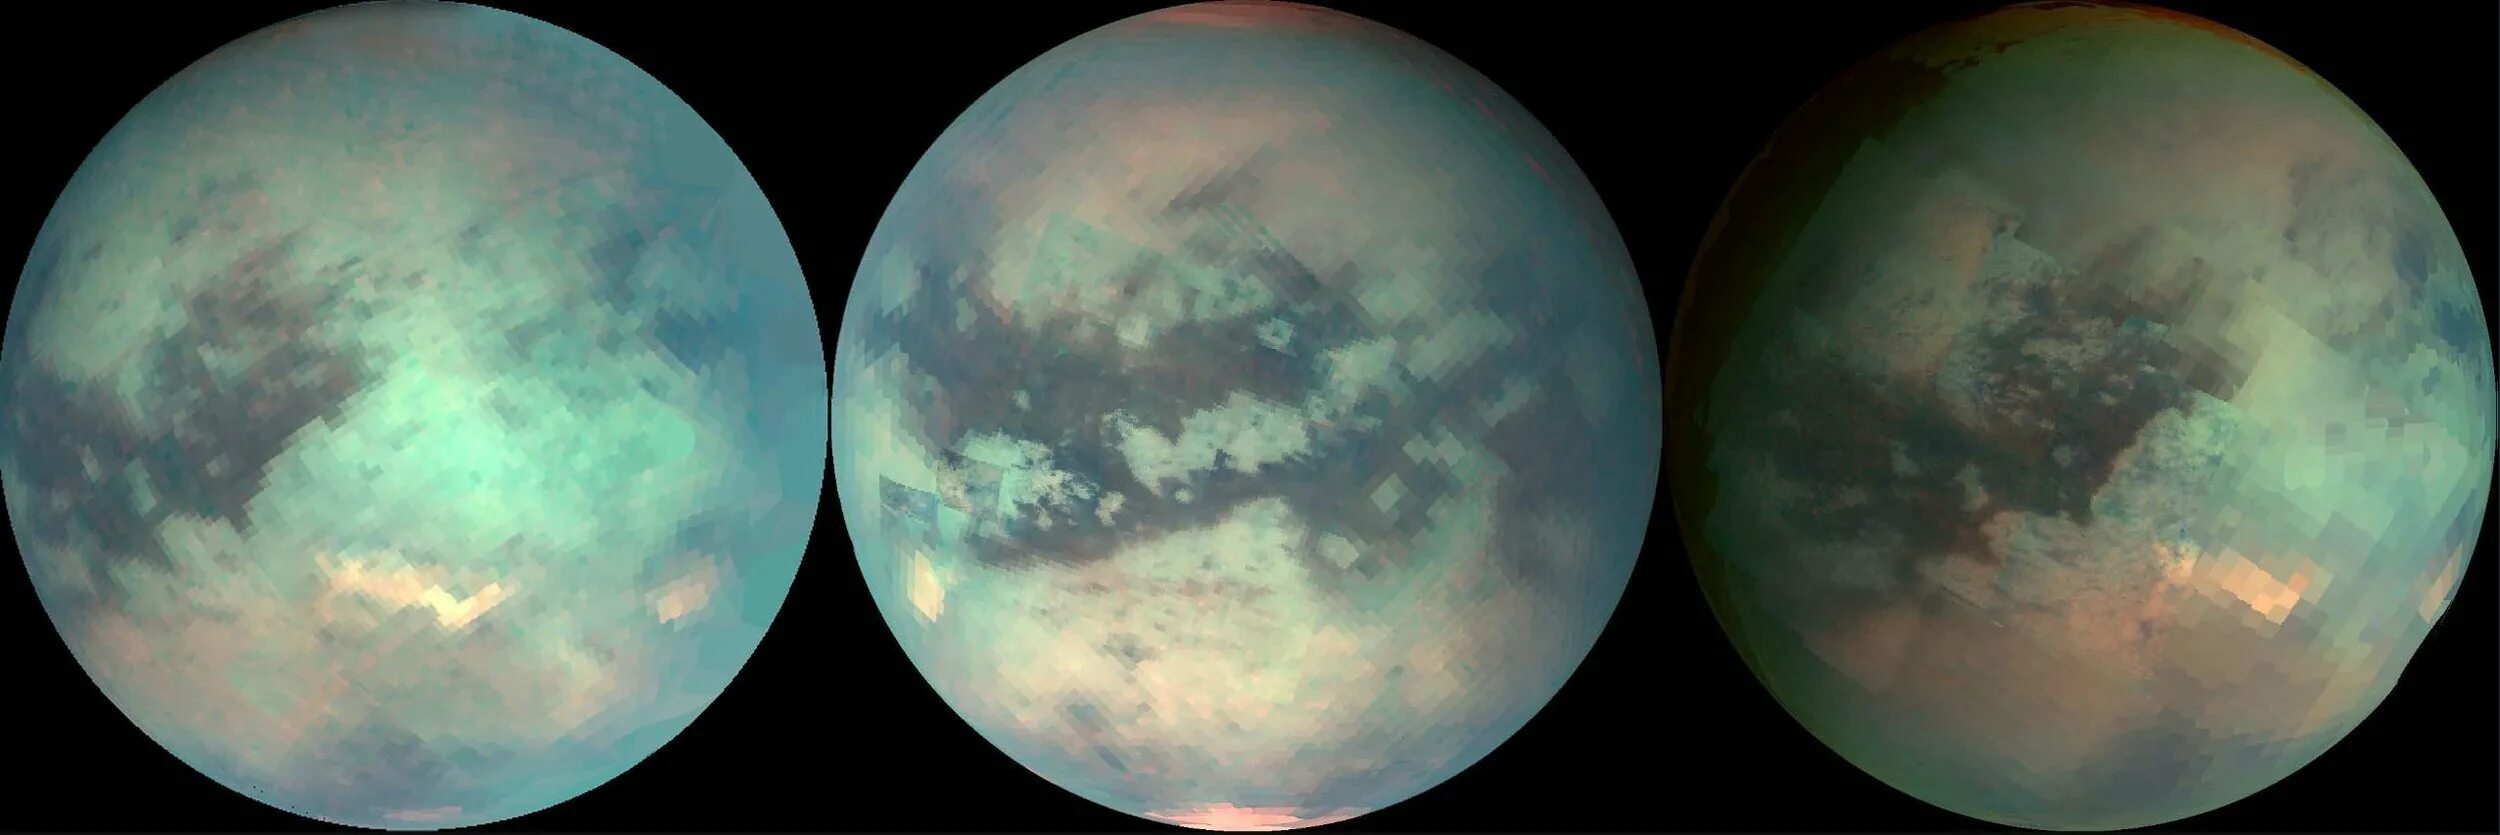 Спутник плотной атмосферой. Титан Спутник Сатурна. Снимки титана спутника Сатурна. Титан Луна Сатурна. Титан Спутник Юпитера.